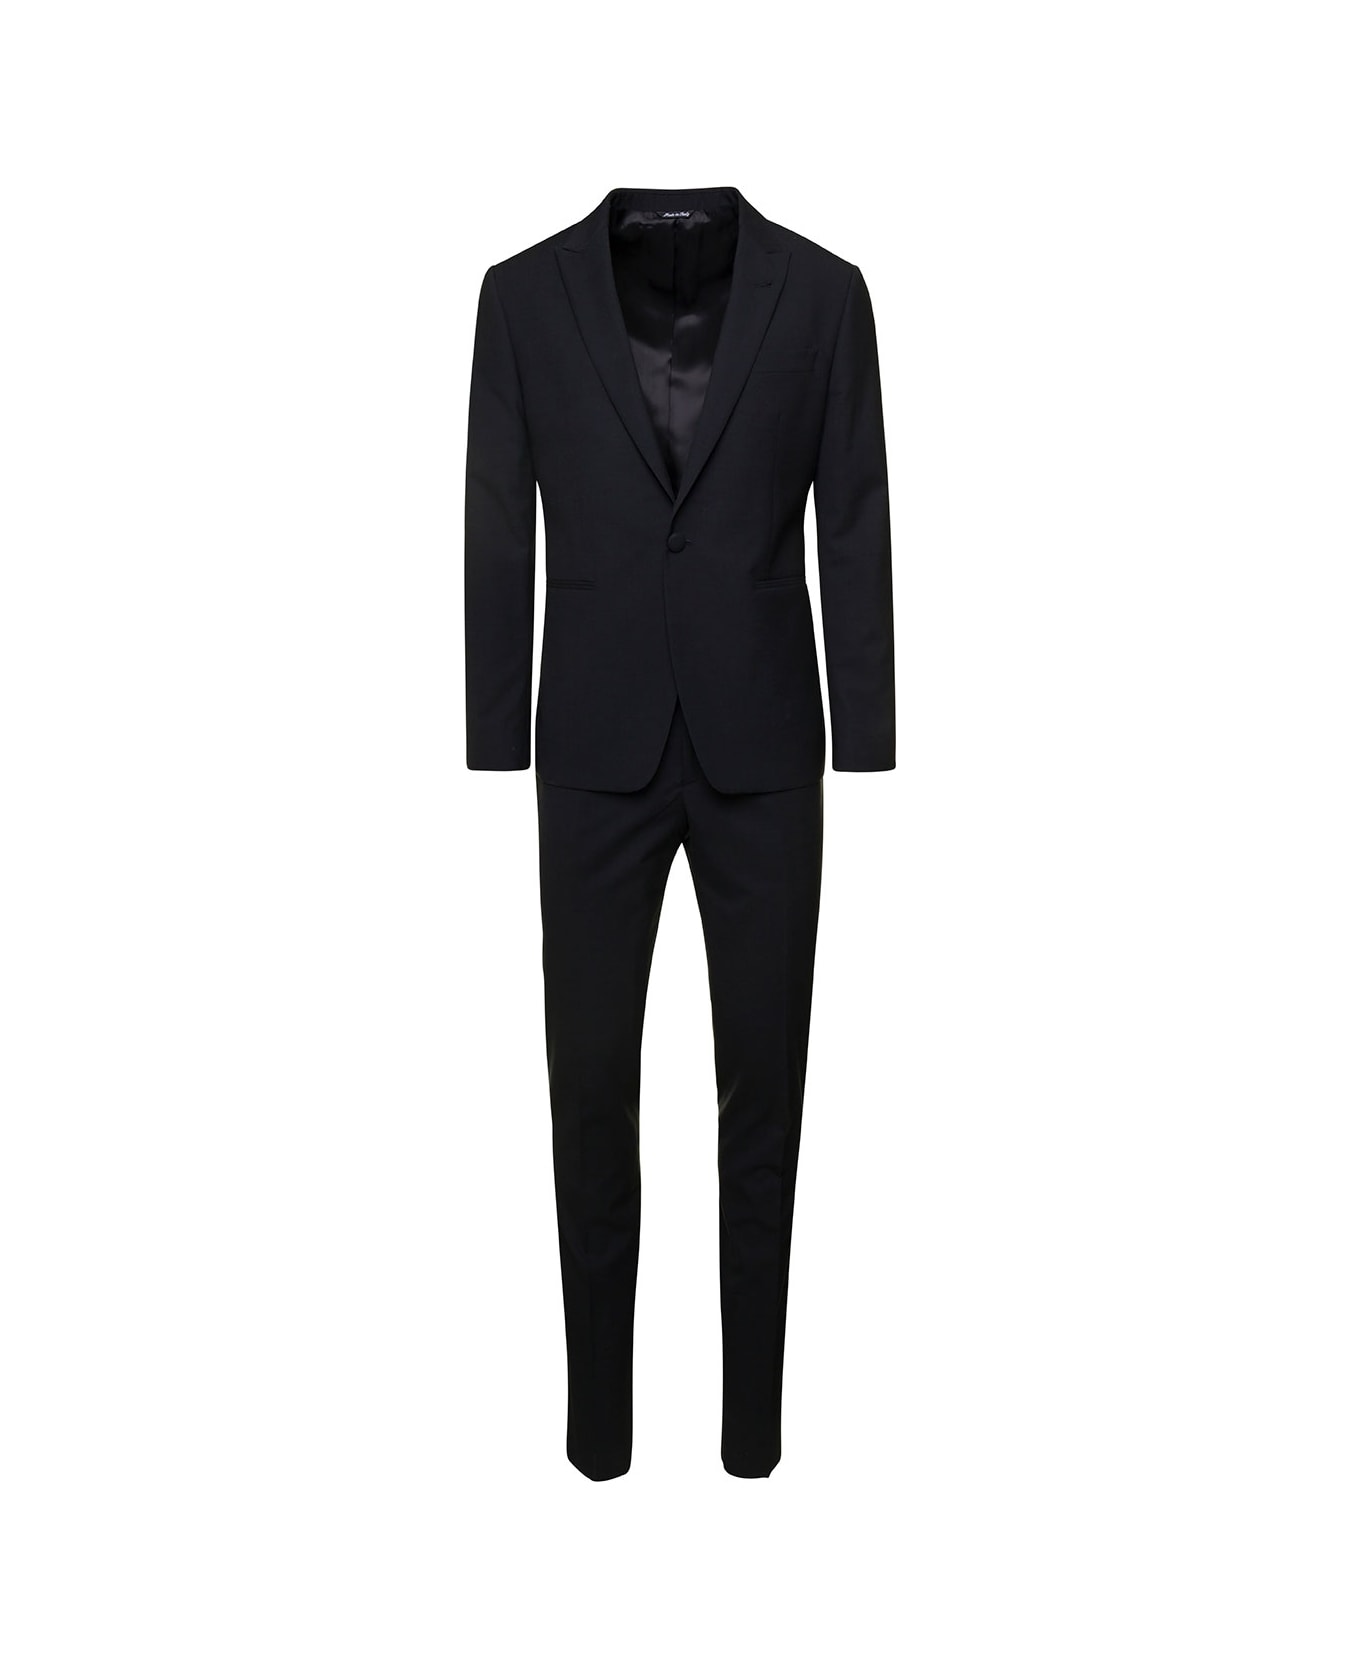 Reveres 1949 Single-breasted Suit In Black Wool Blend Man - Black